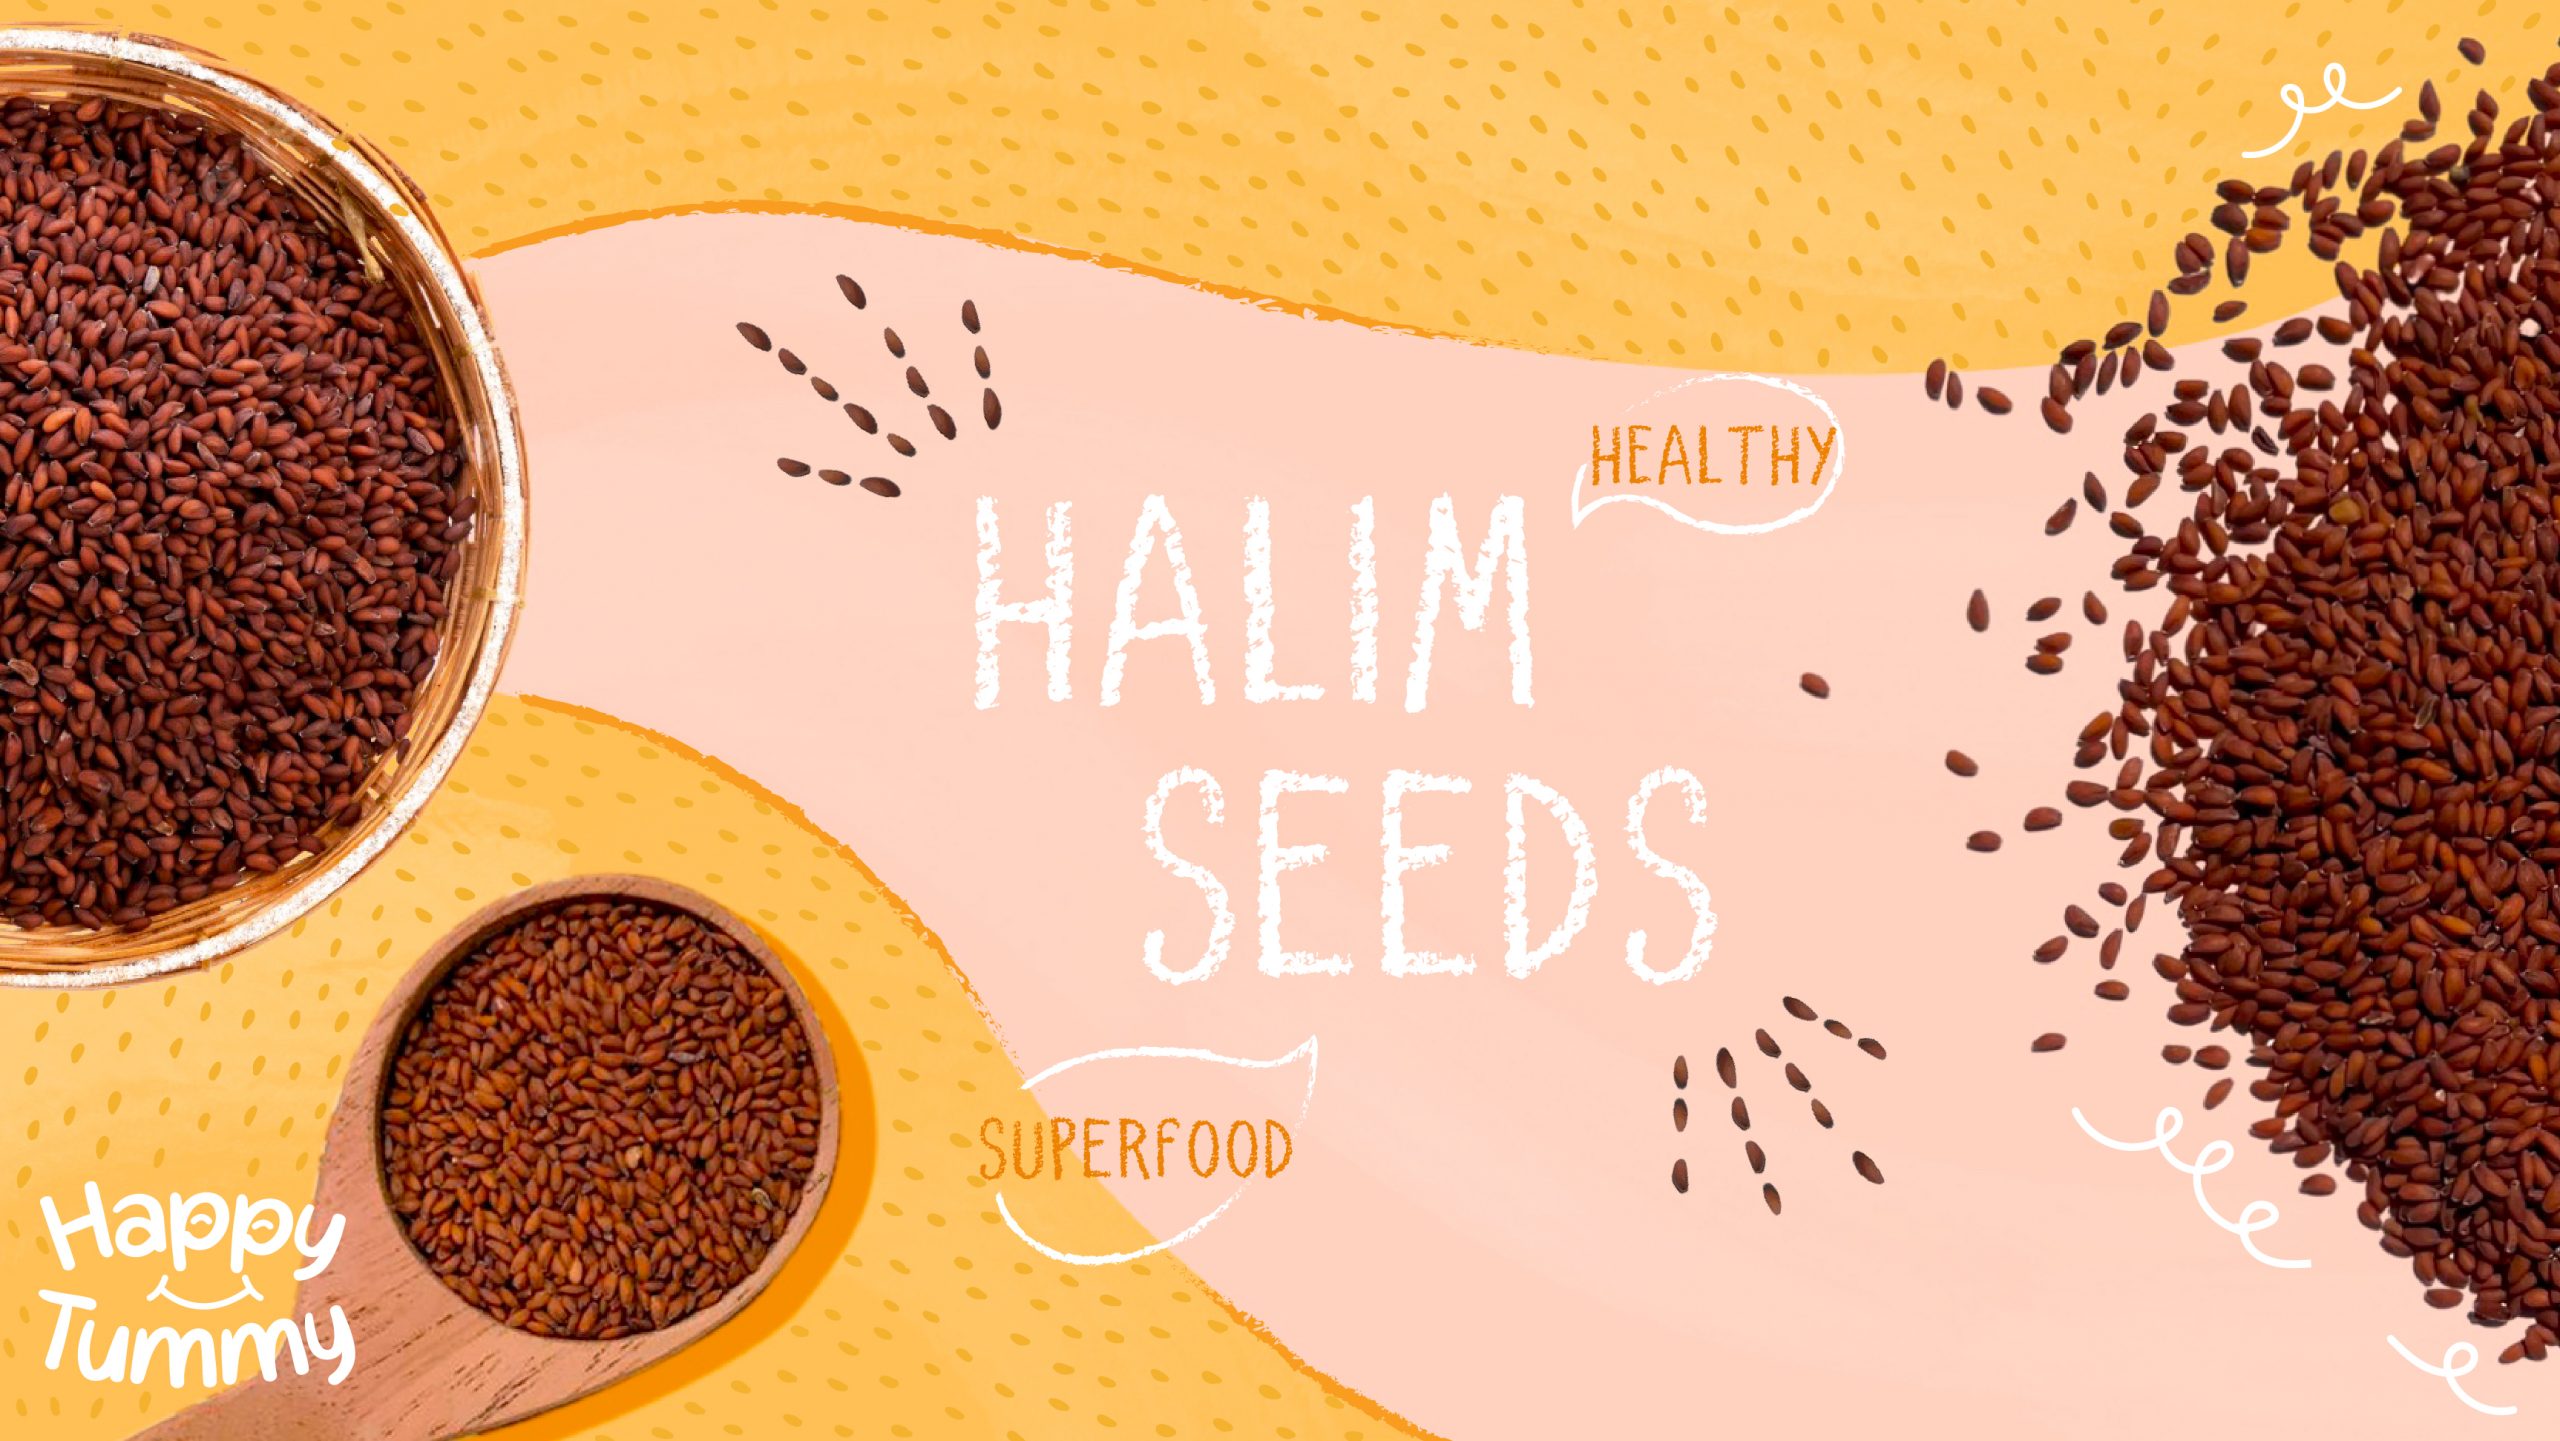 Top 10 Health Benefits Of Eating Halim Seeds